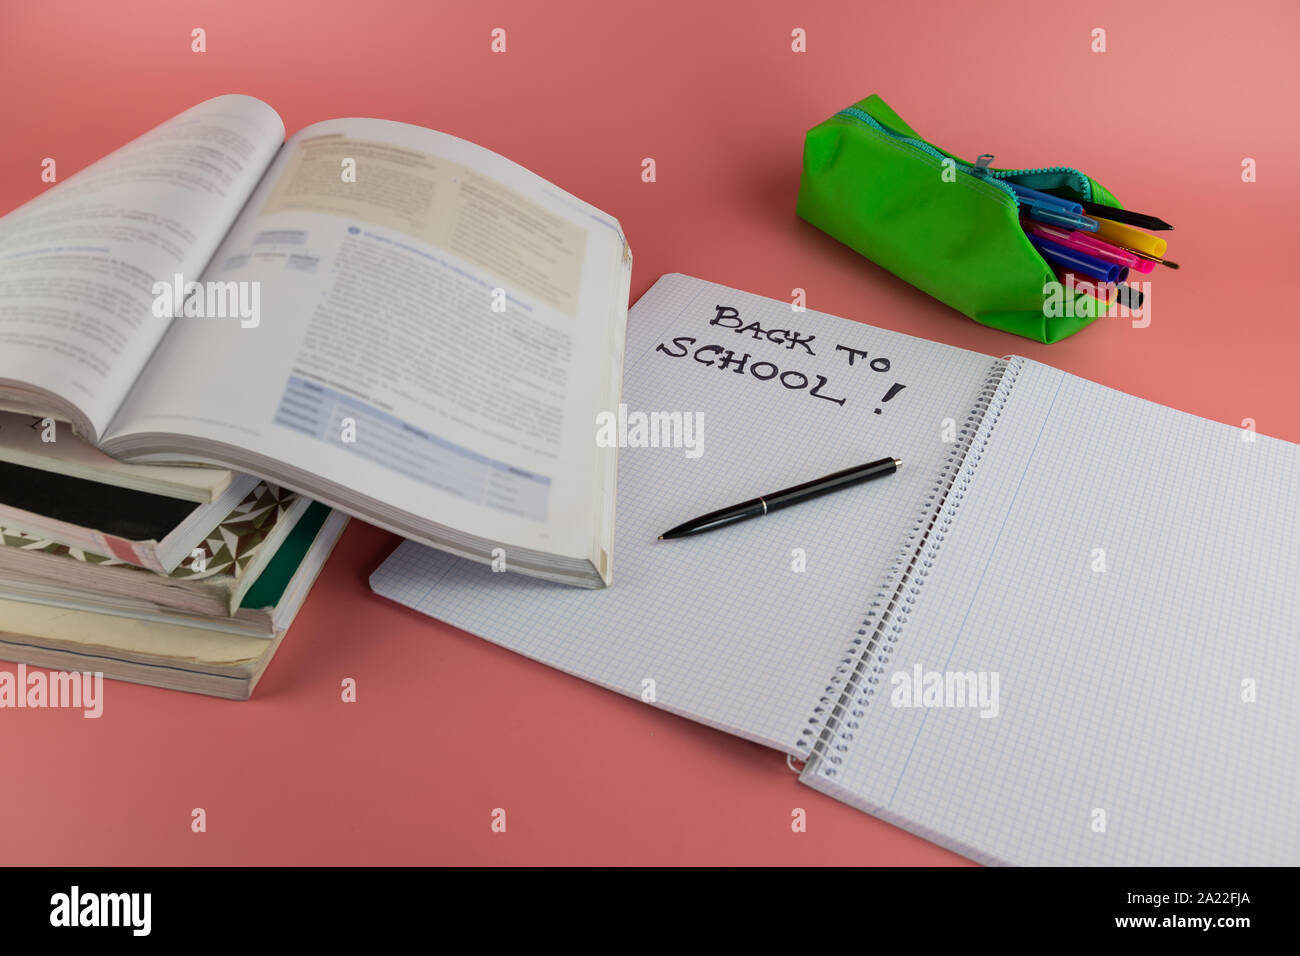 Si torna a scuola concetto, libri e aprire il notebook con le parole si torna a scuola scritto su di esso, su un sfondo rosa Foto Stock